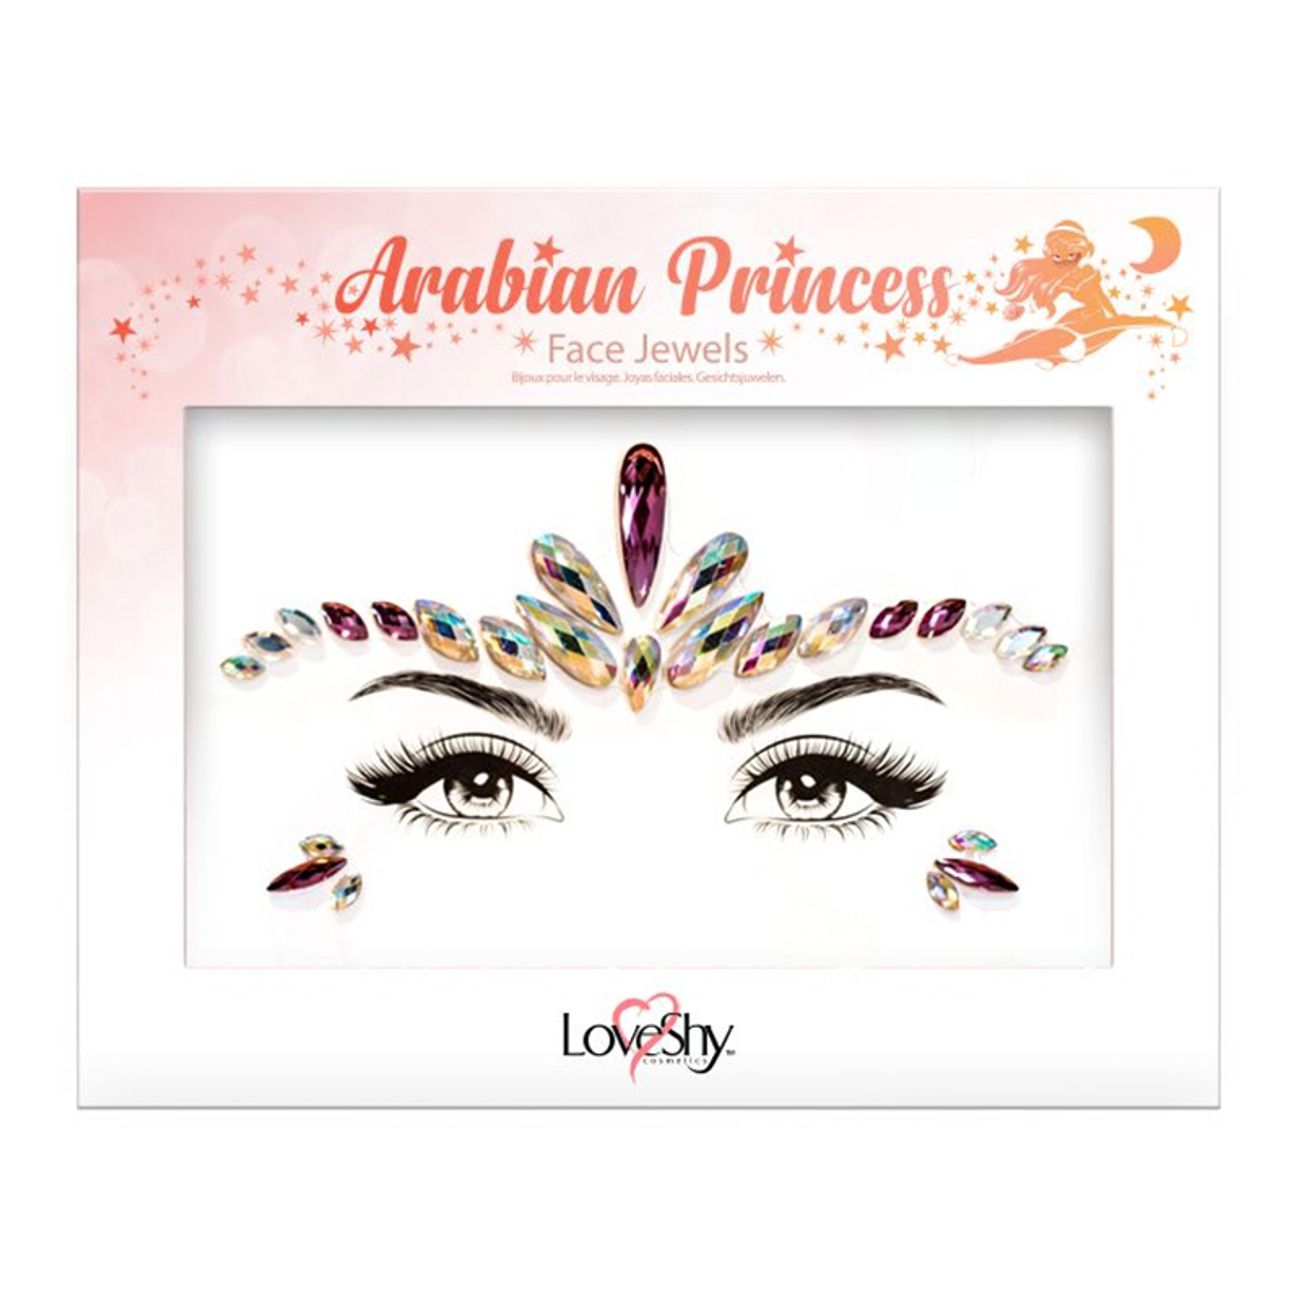 face-jewels-arabian-princess-1